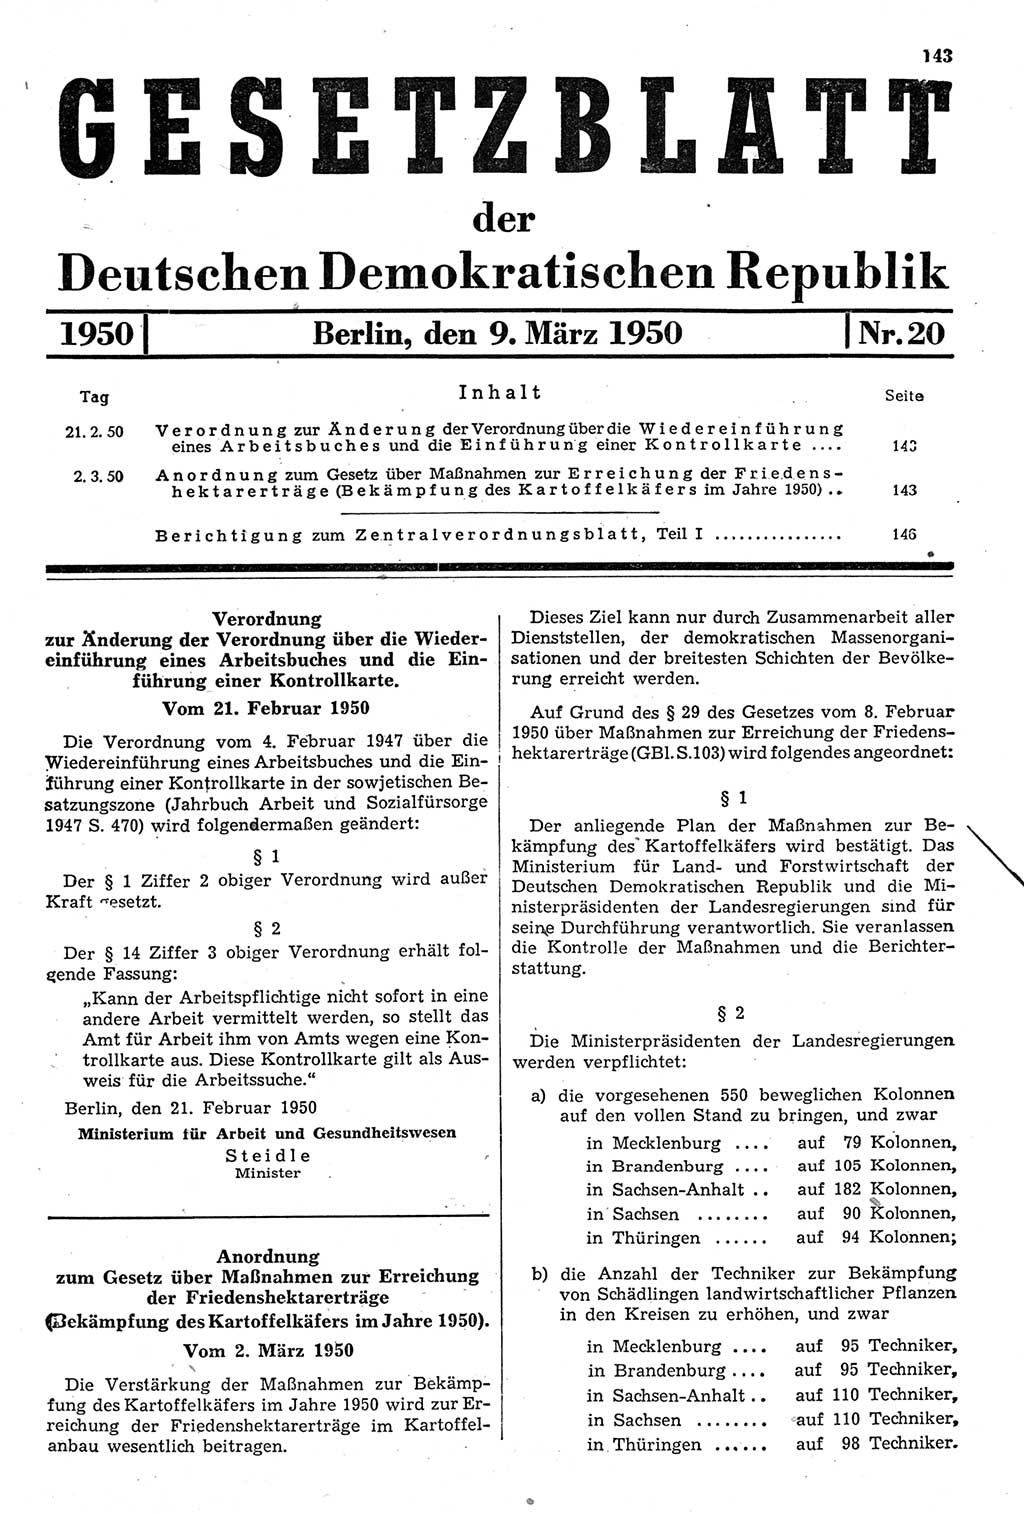 Gesetzblatt (GBl.) der Deutschen Demokratischen Republik (DDR) 1950, Seite 143 (GBl. DDR 1950, S. 143)